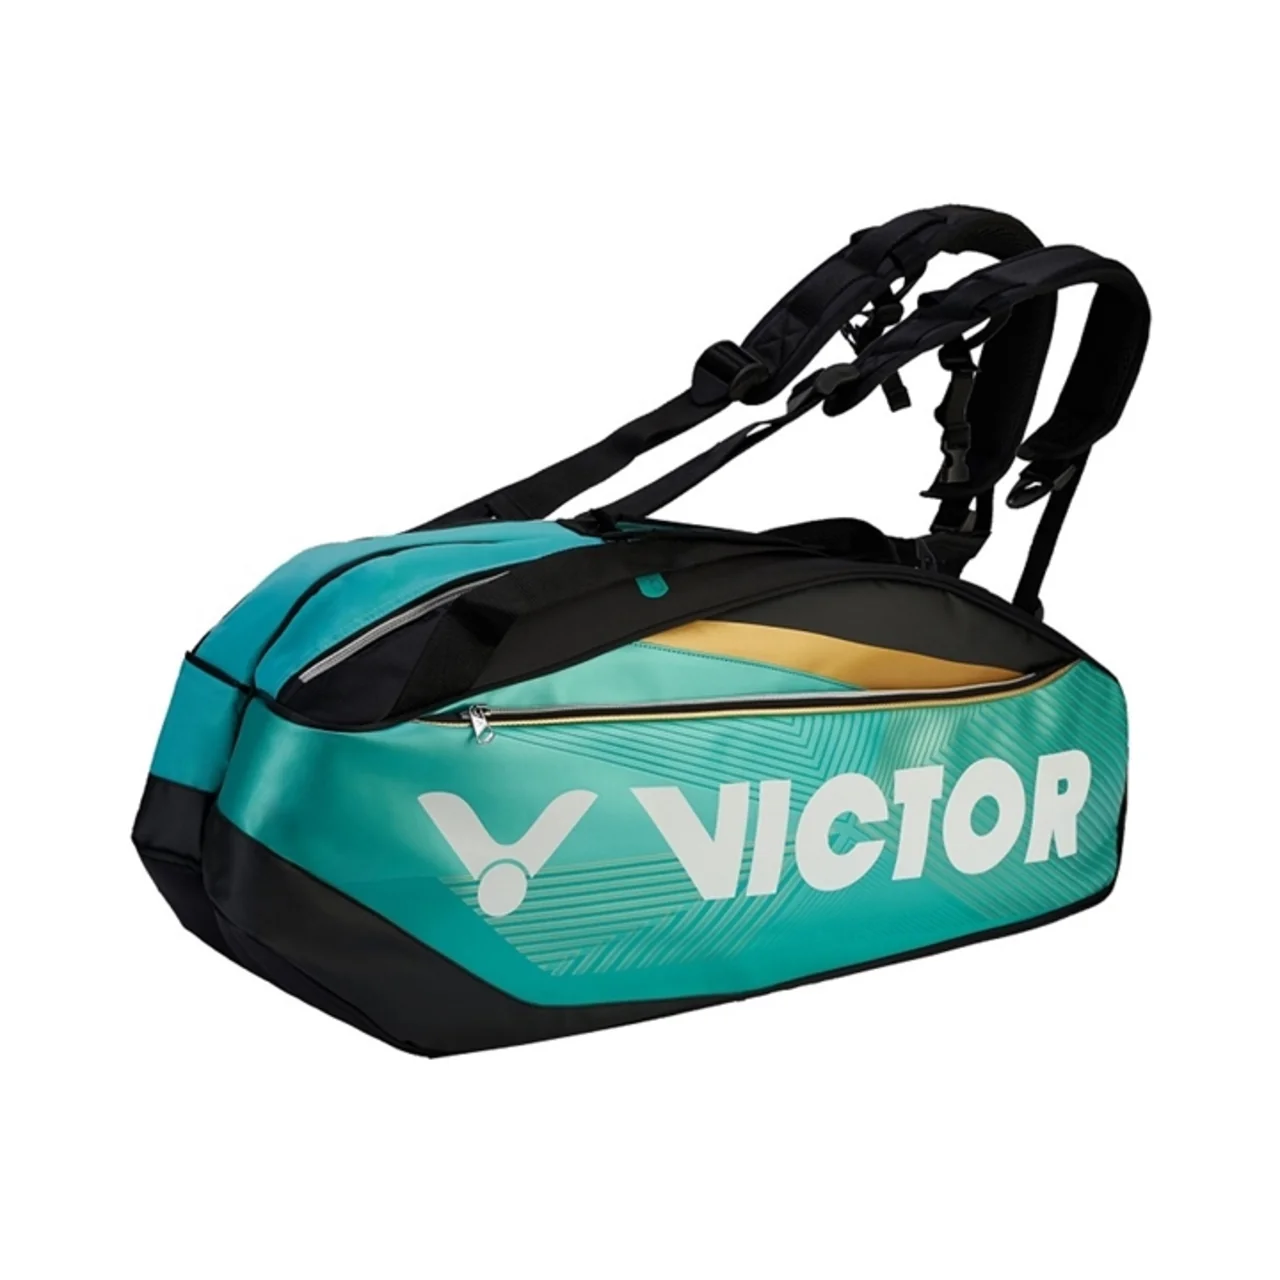 Victor Bag BR9209 Turquoise/Black